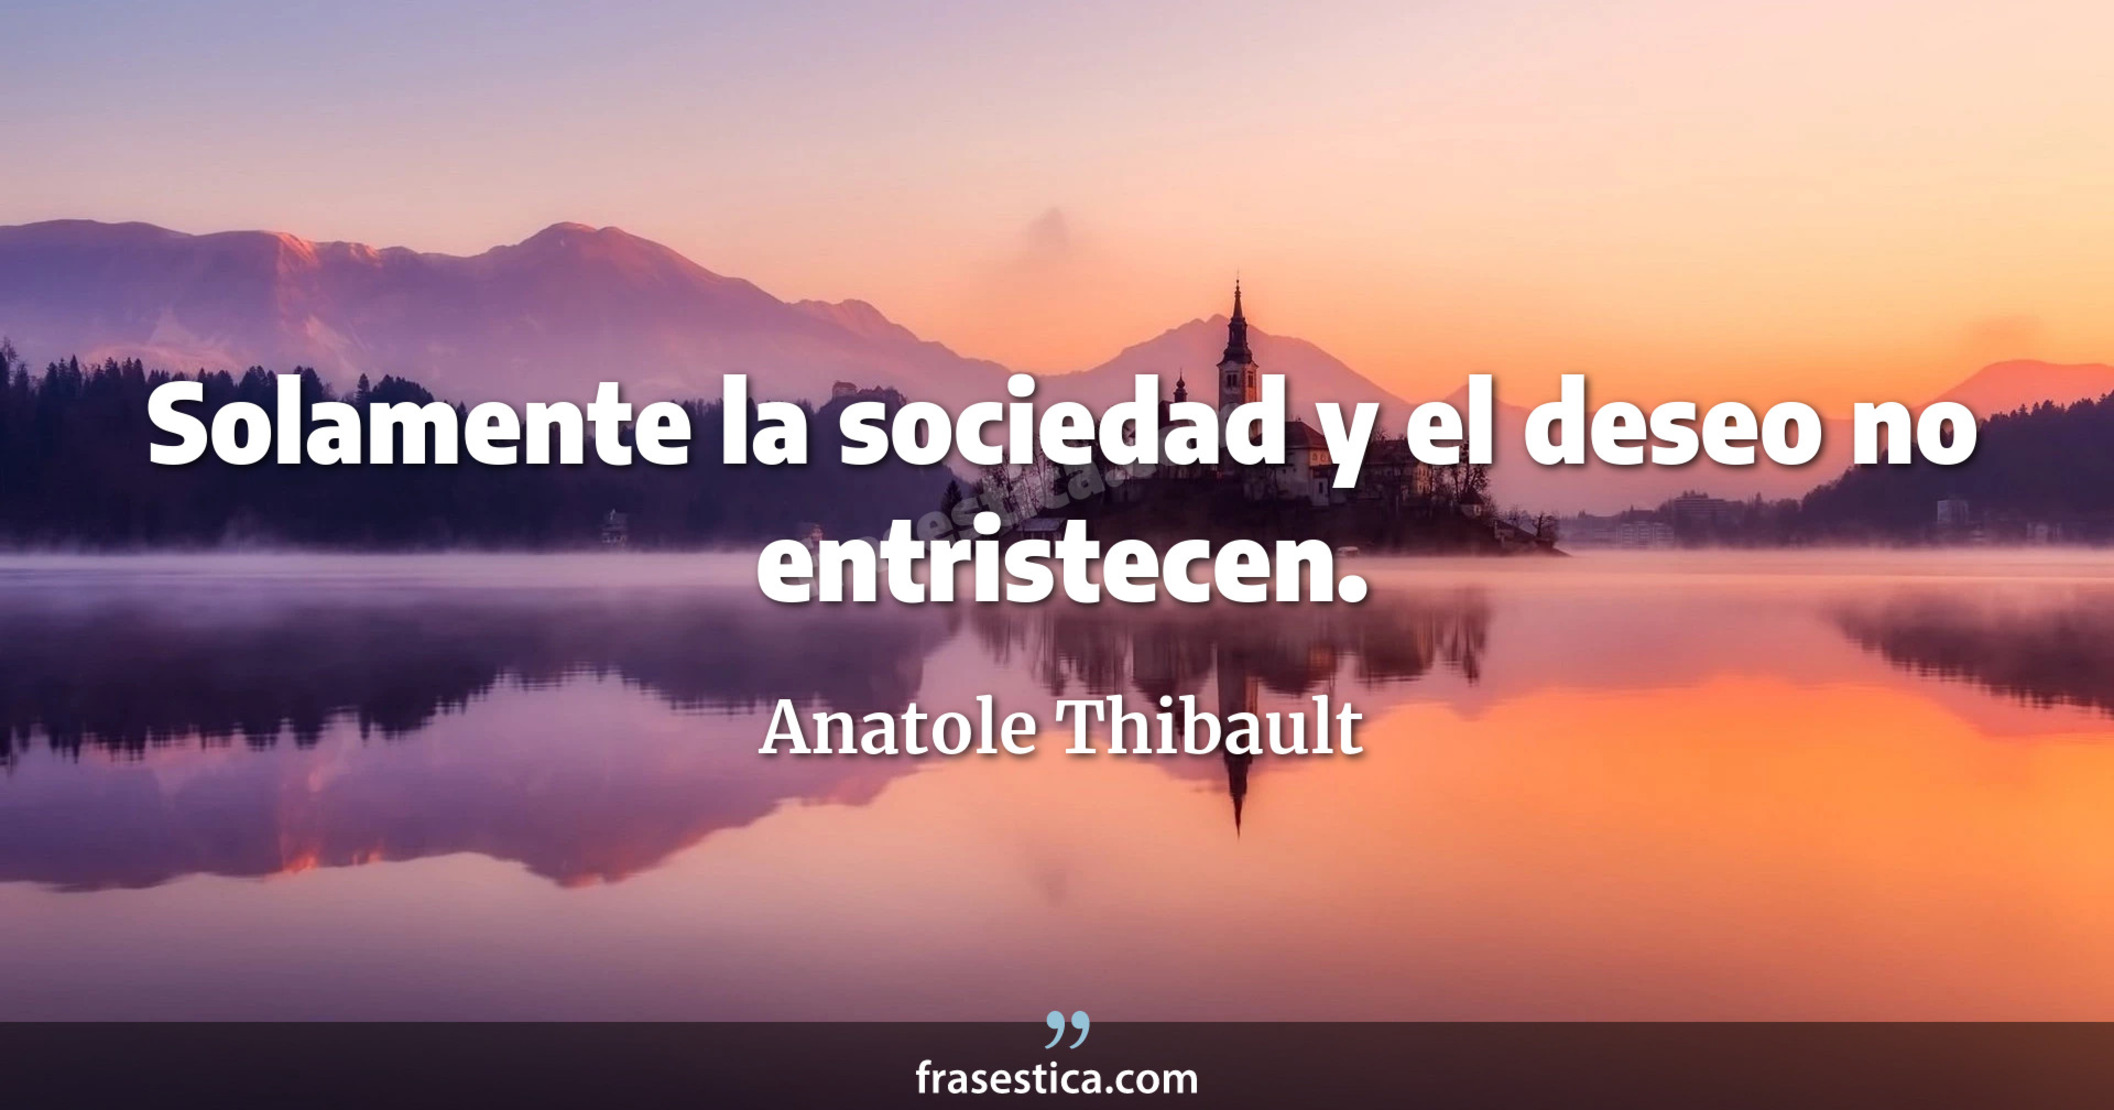 Solamente la sociedad y el deseo no entristecen.  - Anatole Thibault